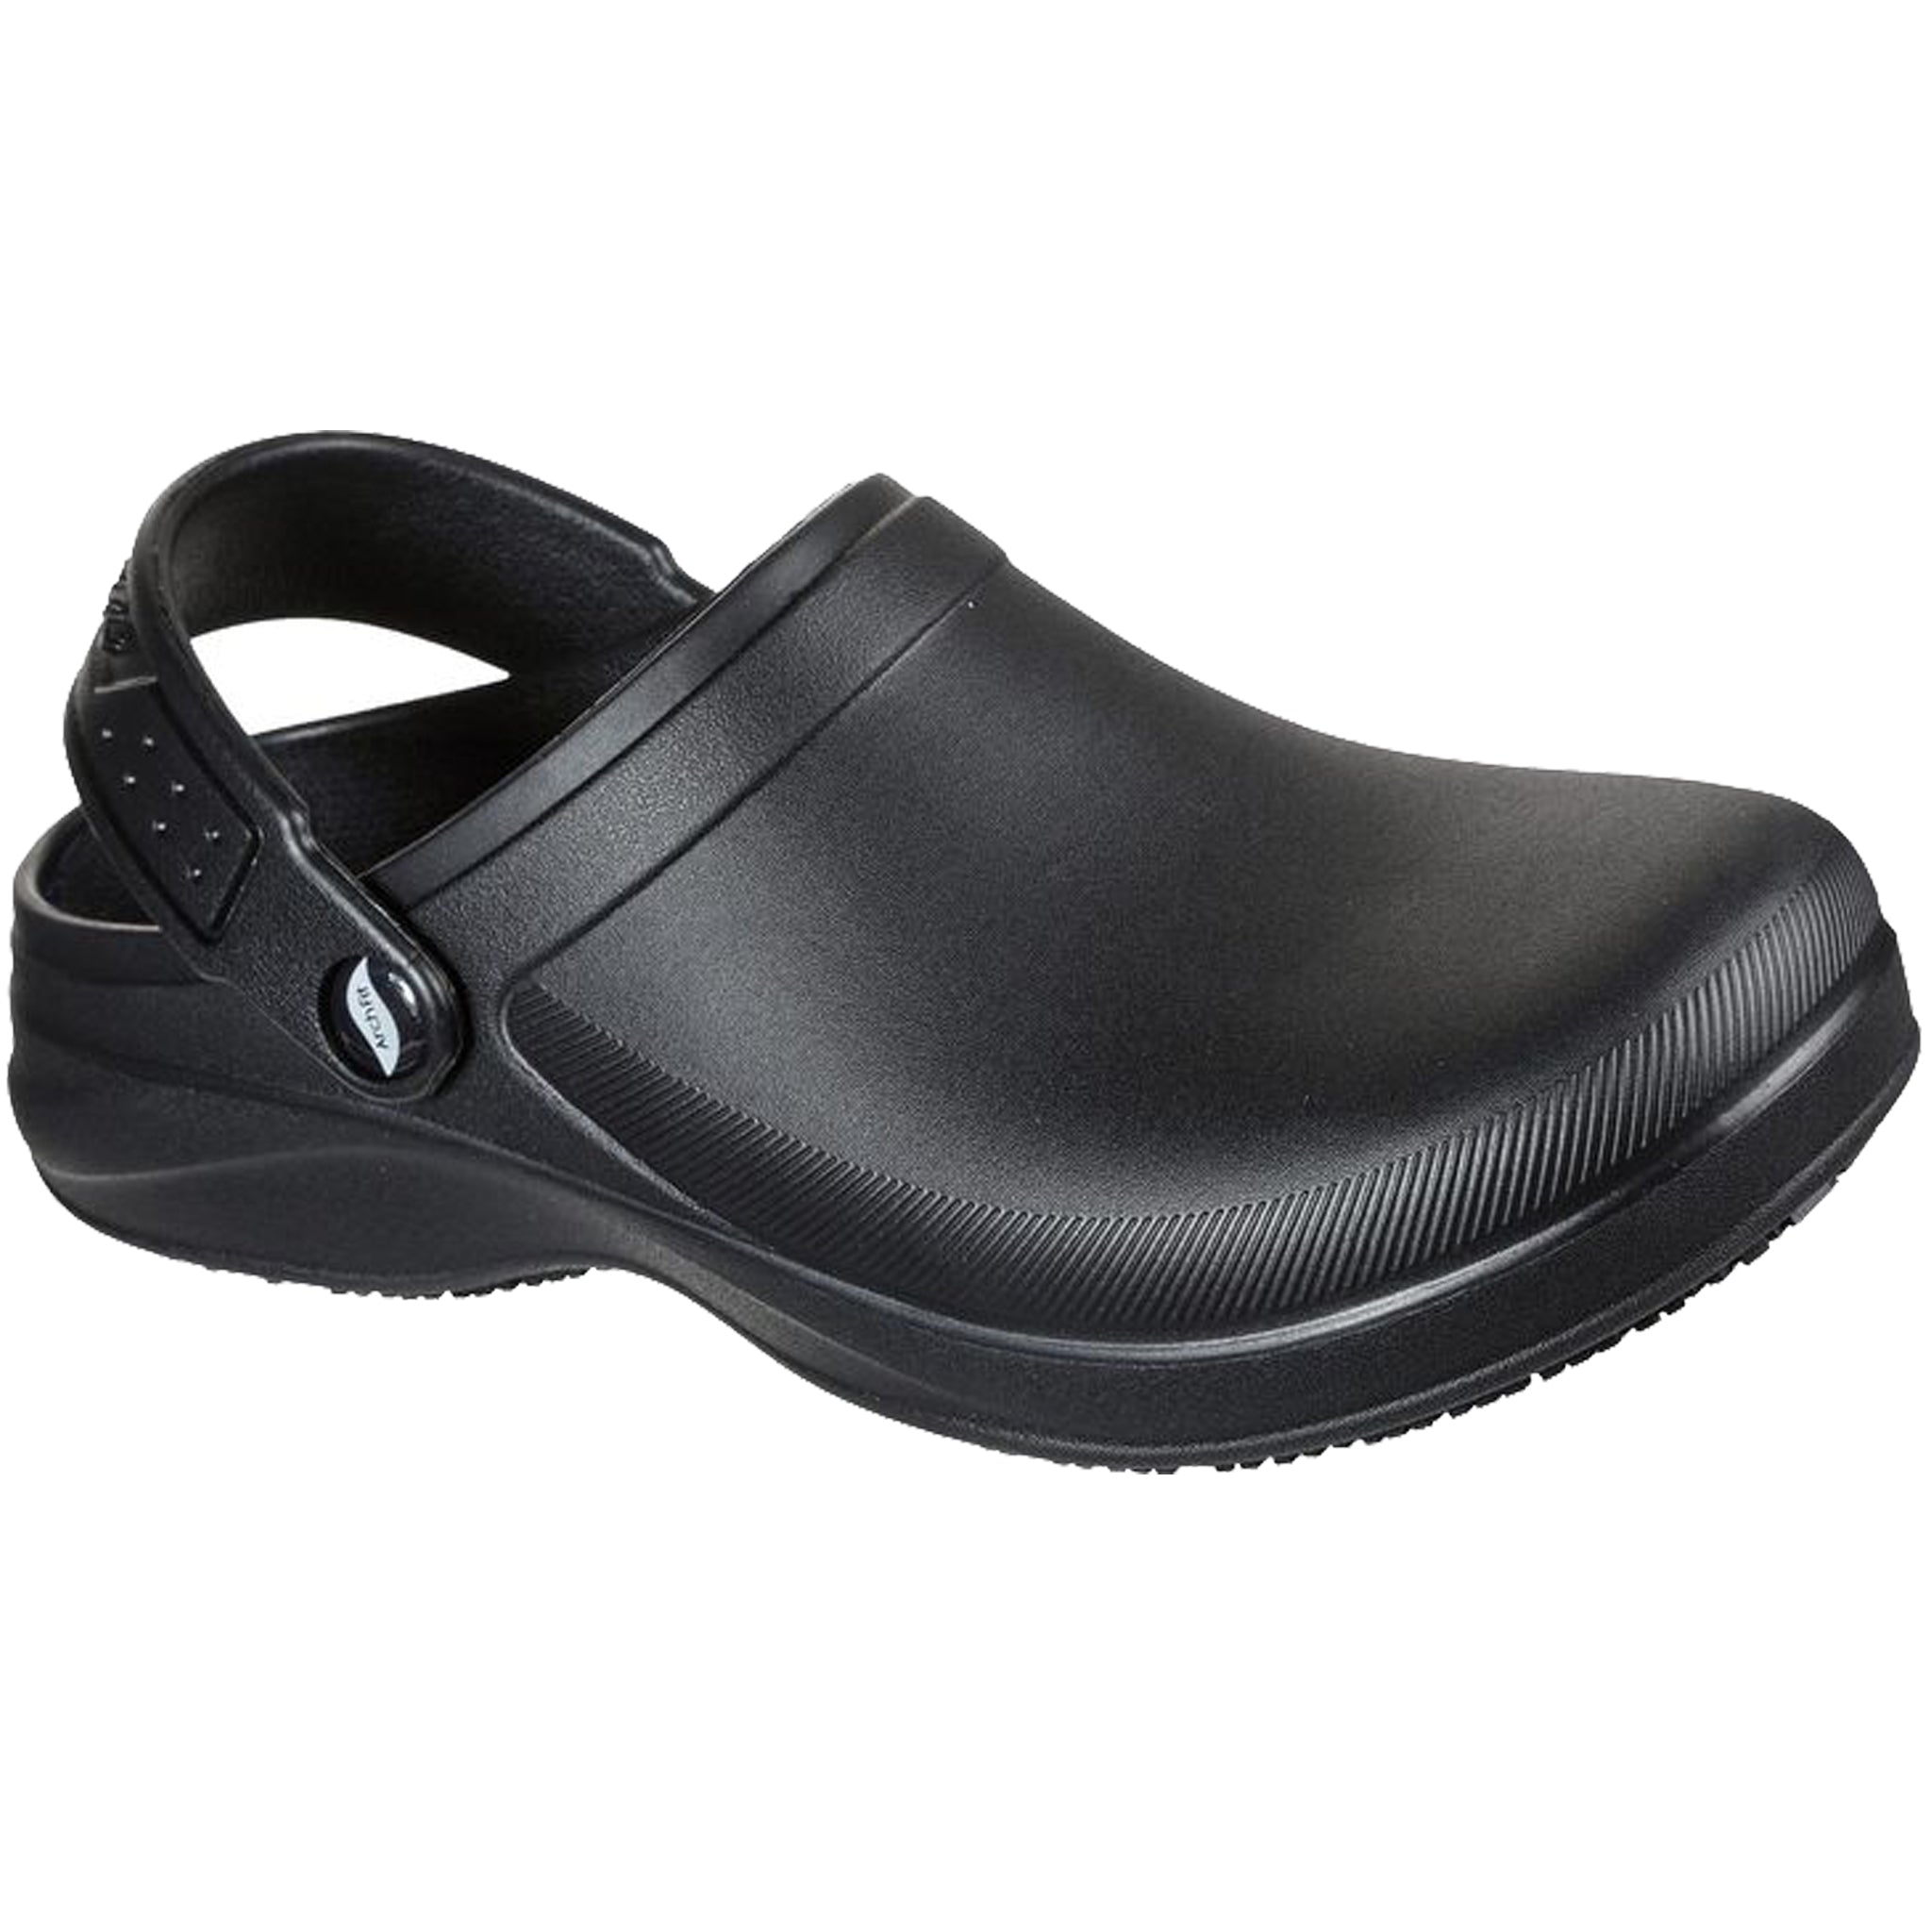 Silenciosamente Propuesta alternativa bandeja Skechers Mujer 108067 Arch Fit Riverbound Pasay Resistentes al Desliz  Zapatos de Trabajo Zuecos | eBay